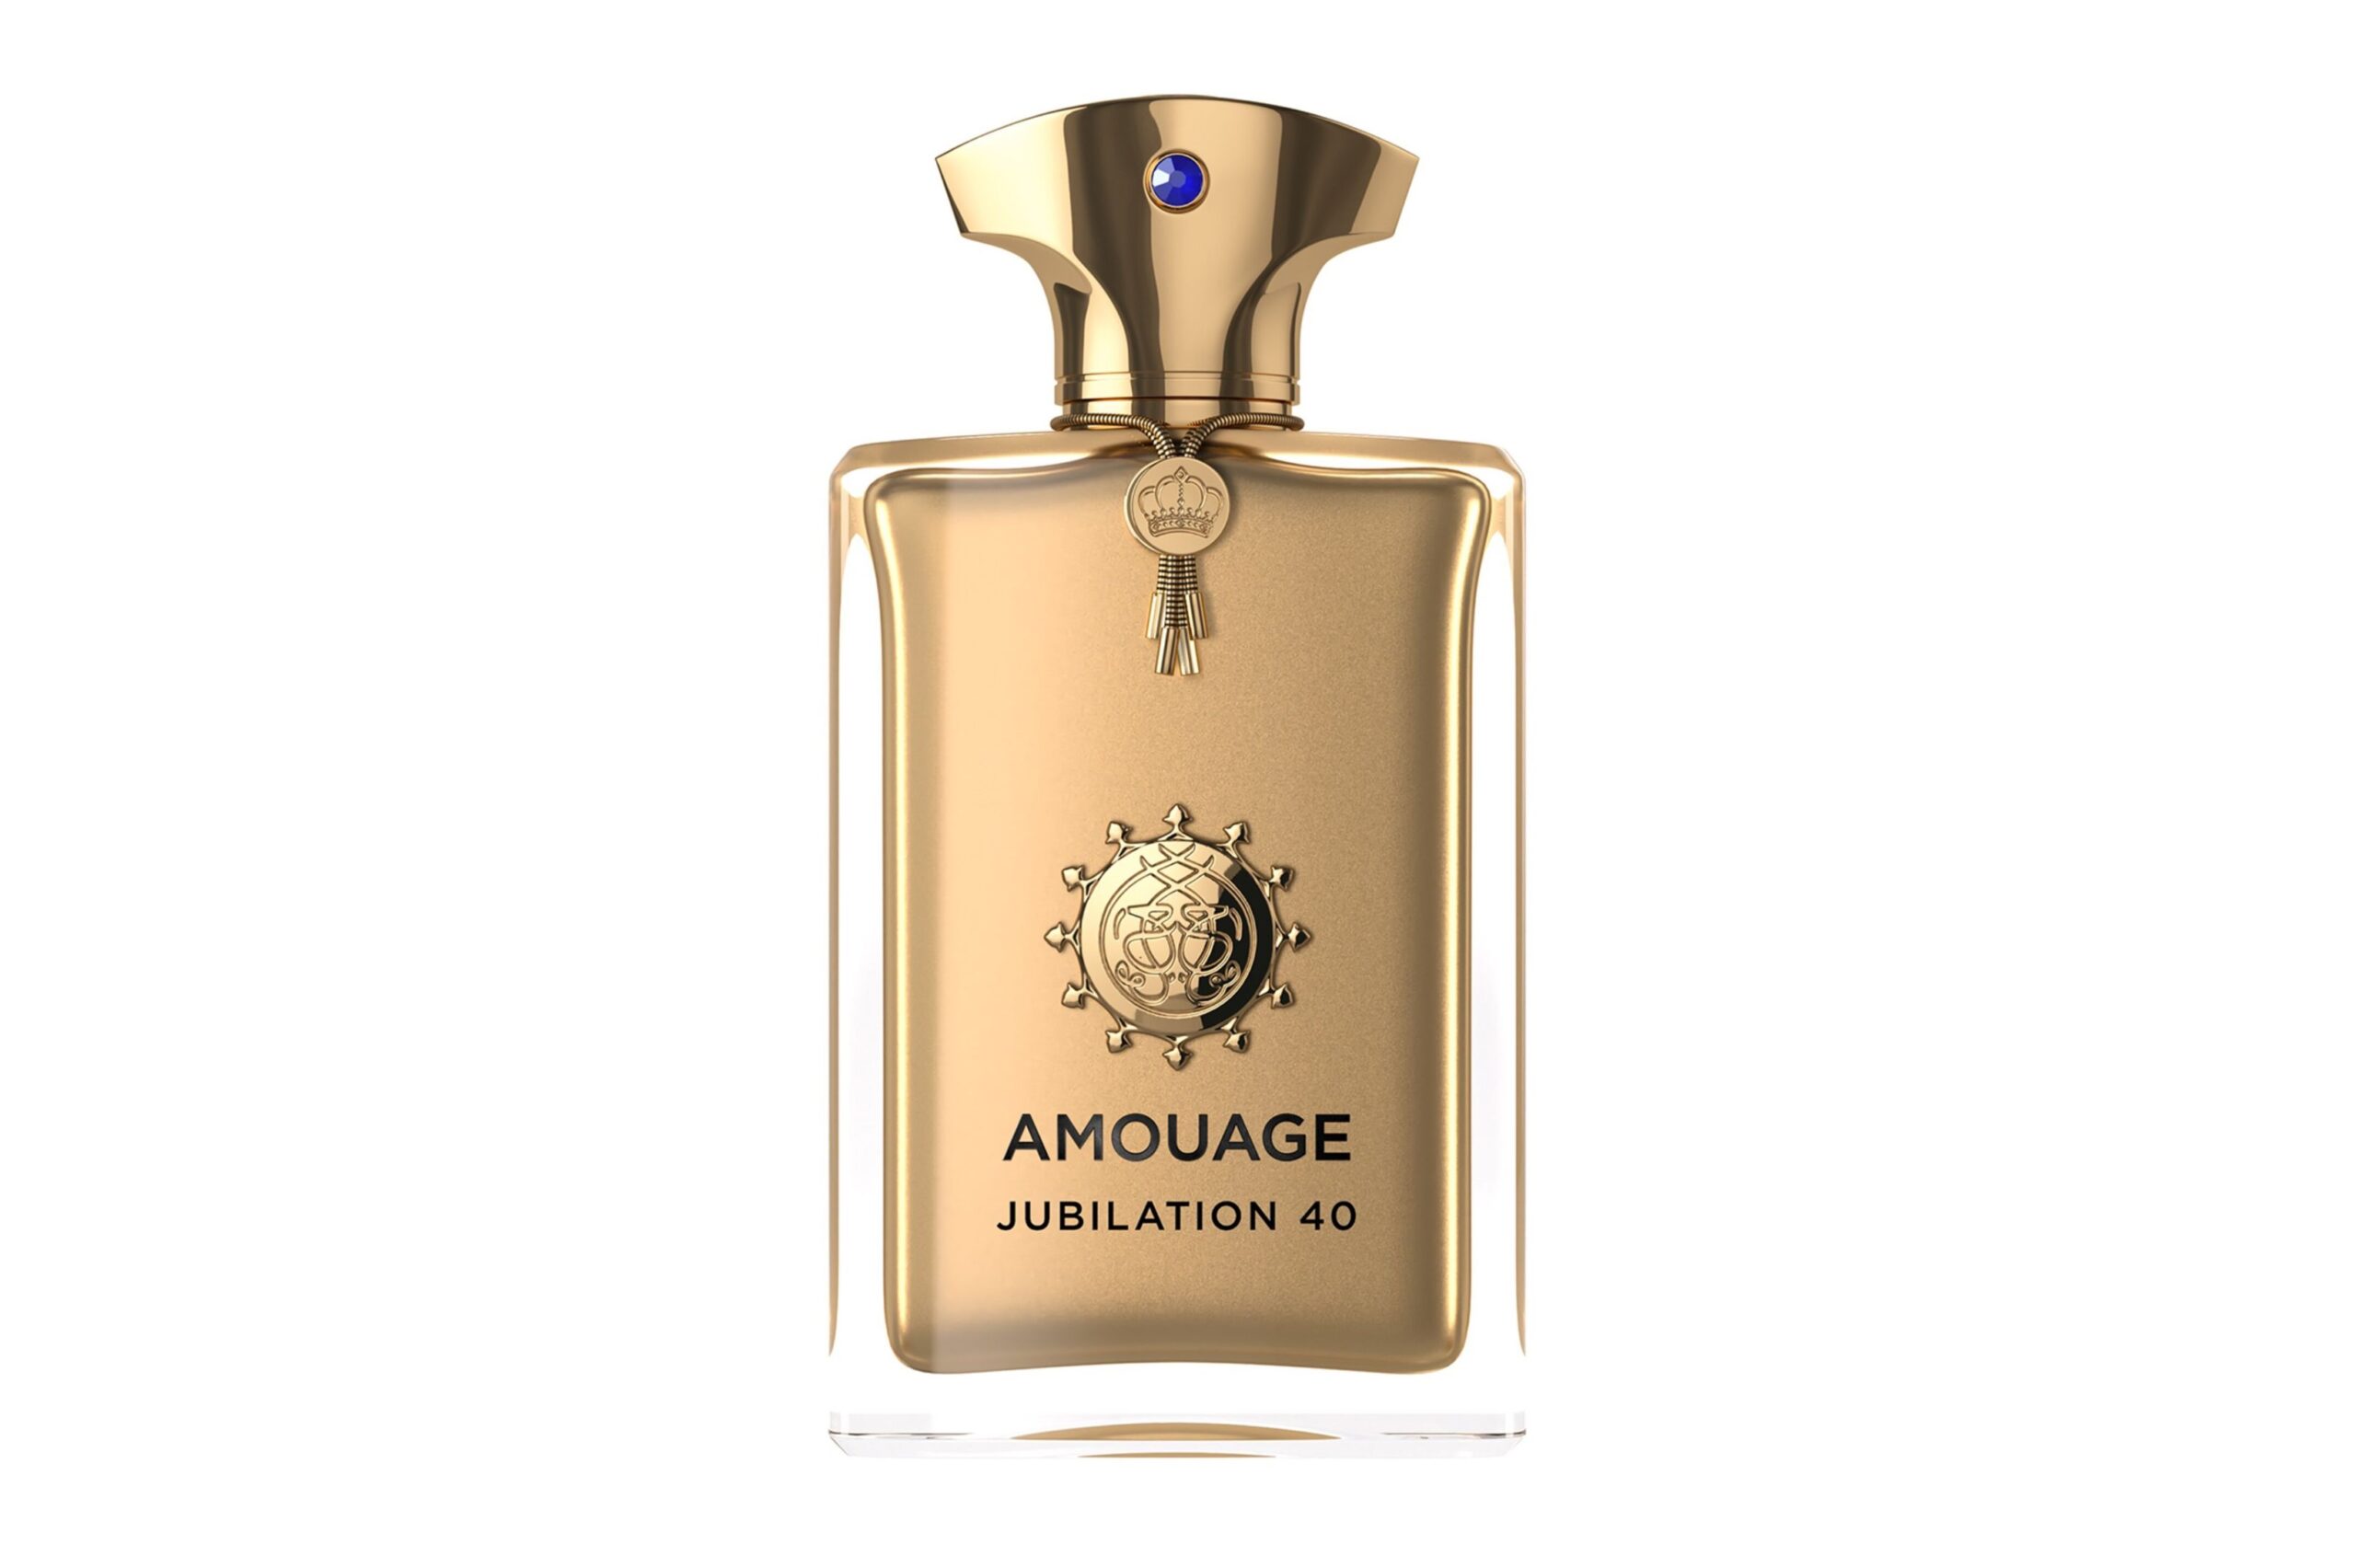 Amouage Jubilation 40 Extrait de Parfum